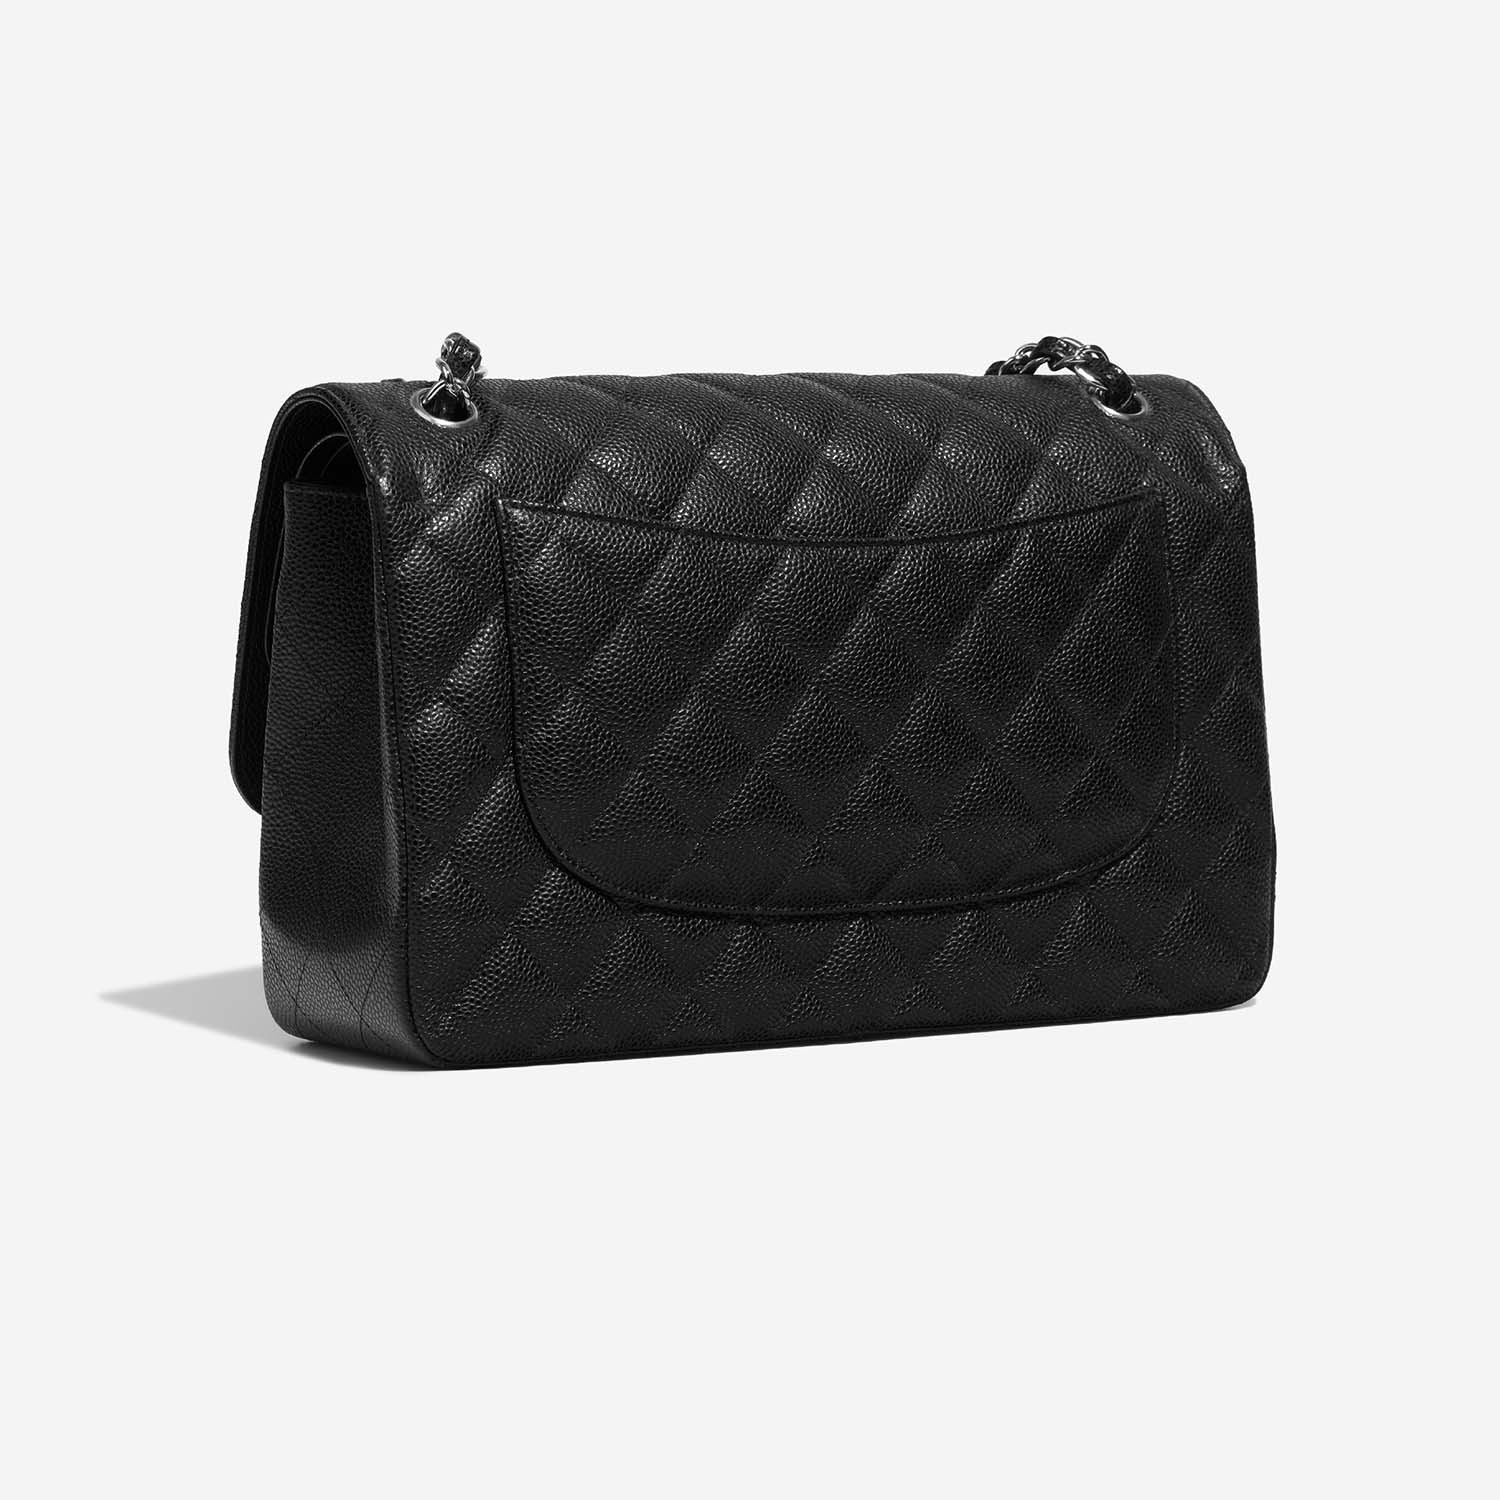 Chanel Timeless Jumbo Schwarz 7SB S | Verkaufen Sie Ihre Designer-Tasche auf Saclab.com